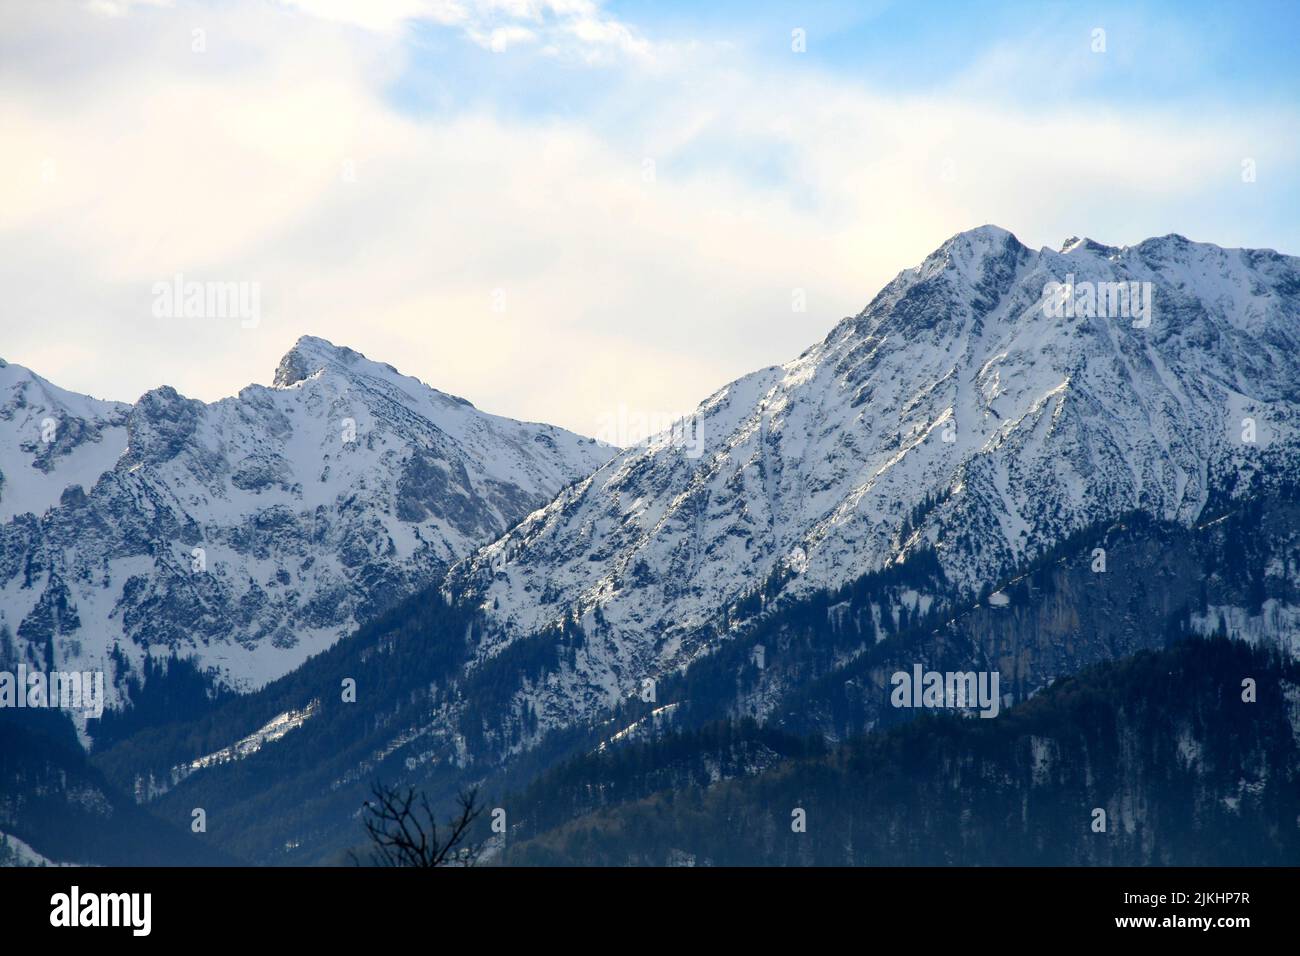 Eine atemberaubende Aussicht auf die snowcap Alpen auf einem bewölkten Himmel Hintergrund Stockfoto